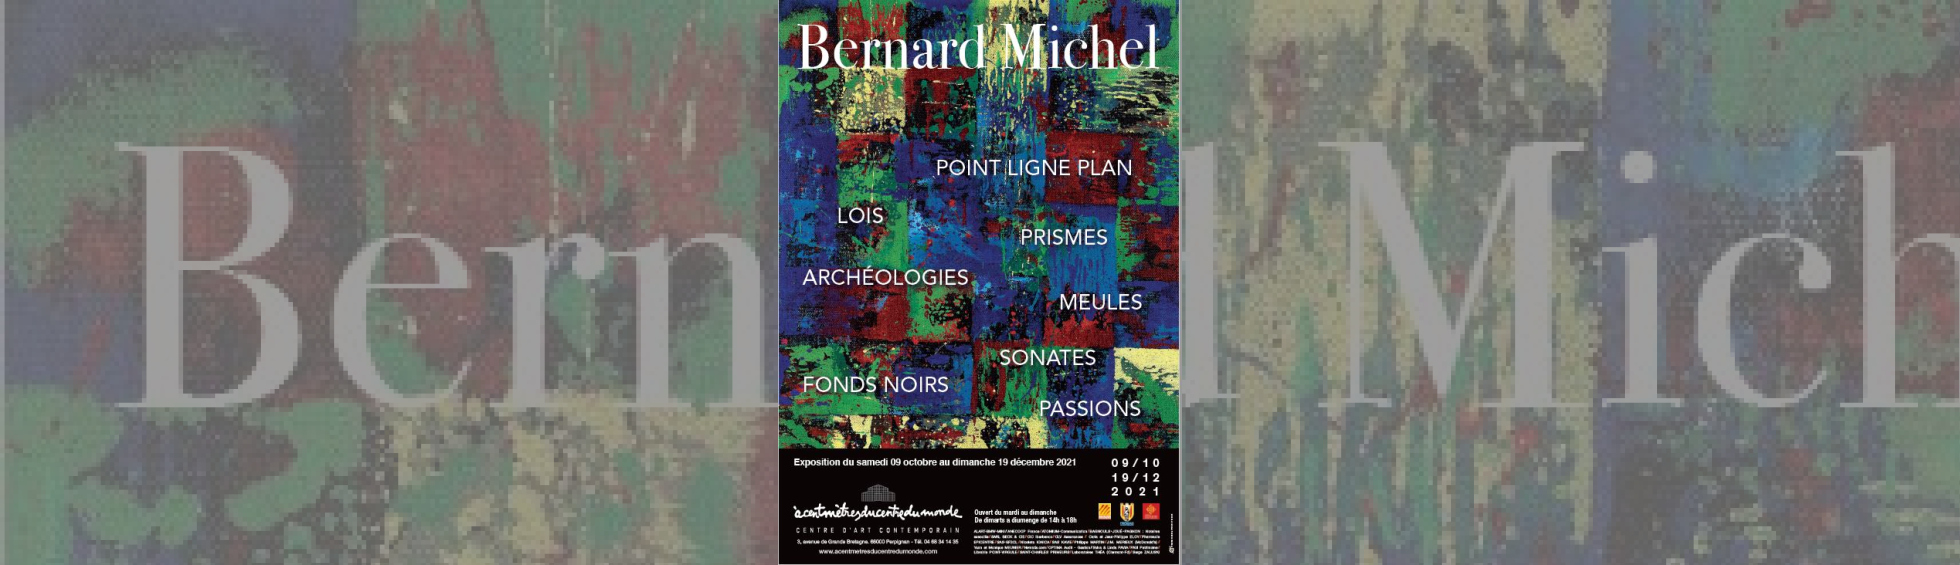 Exposition Bernard MIchel - peinture série de carré de couleur rouge vert bleu jaune